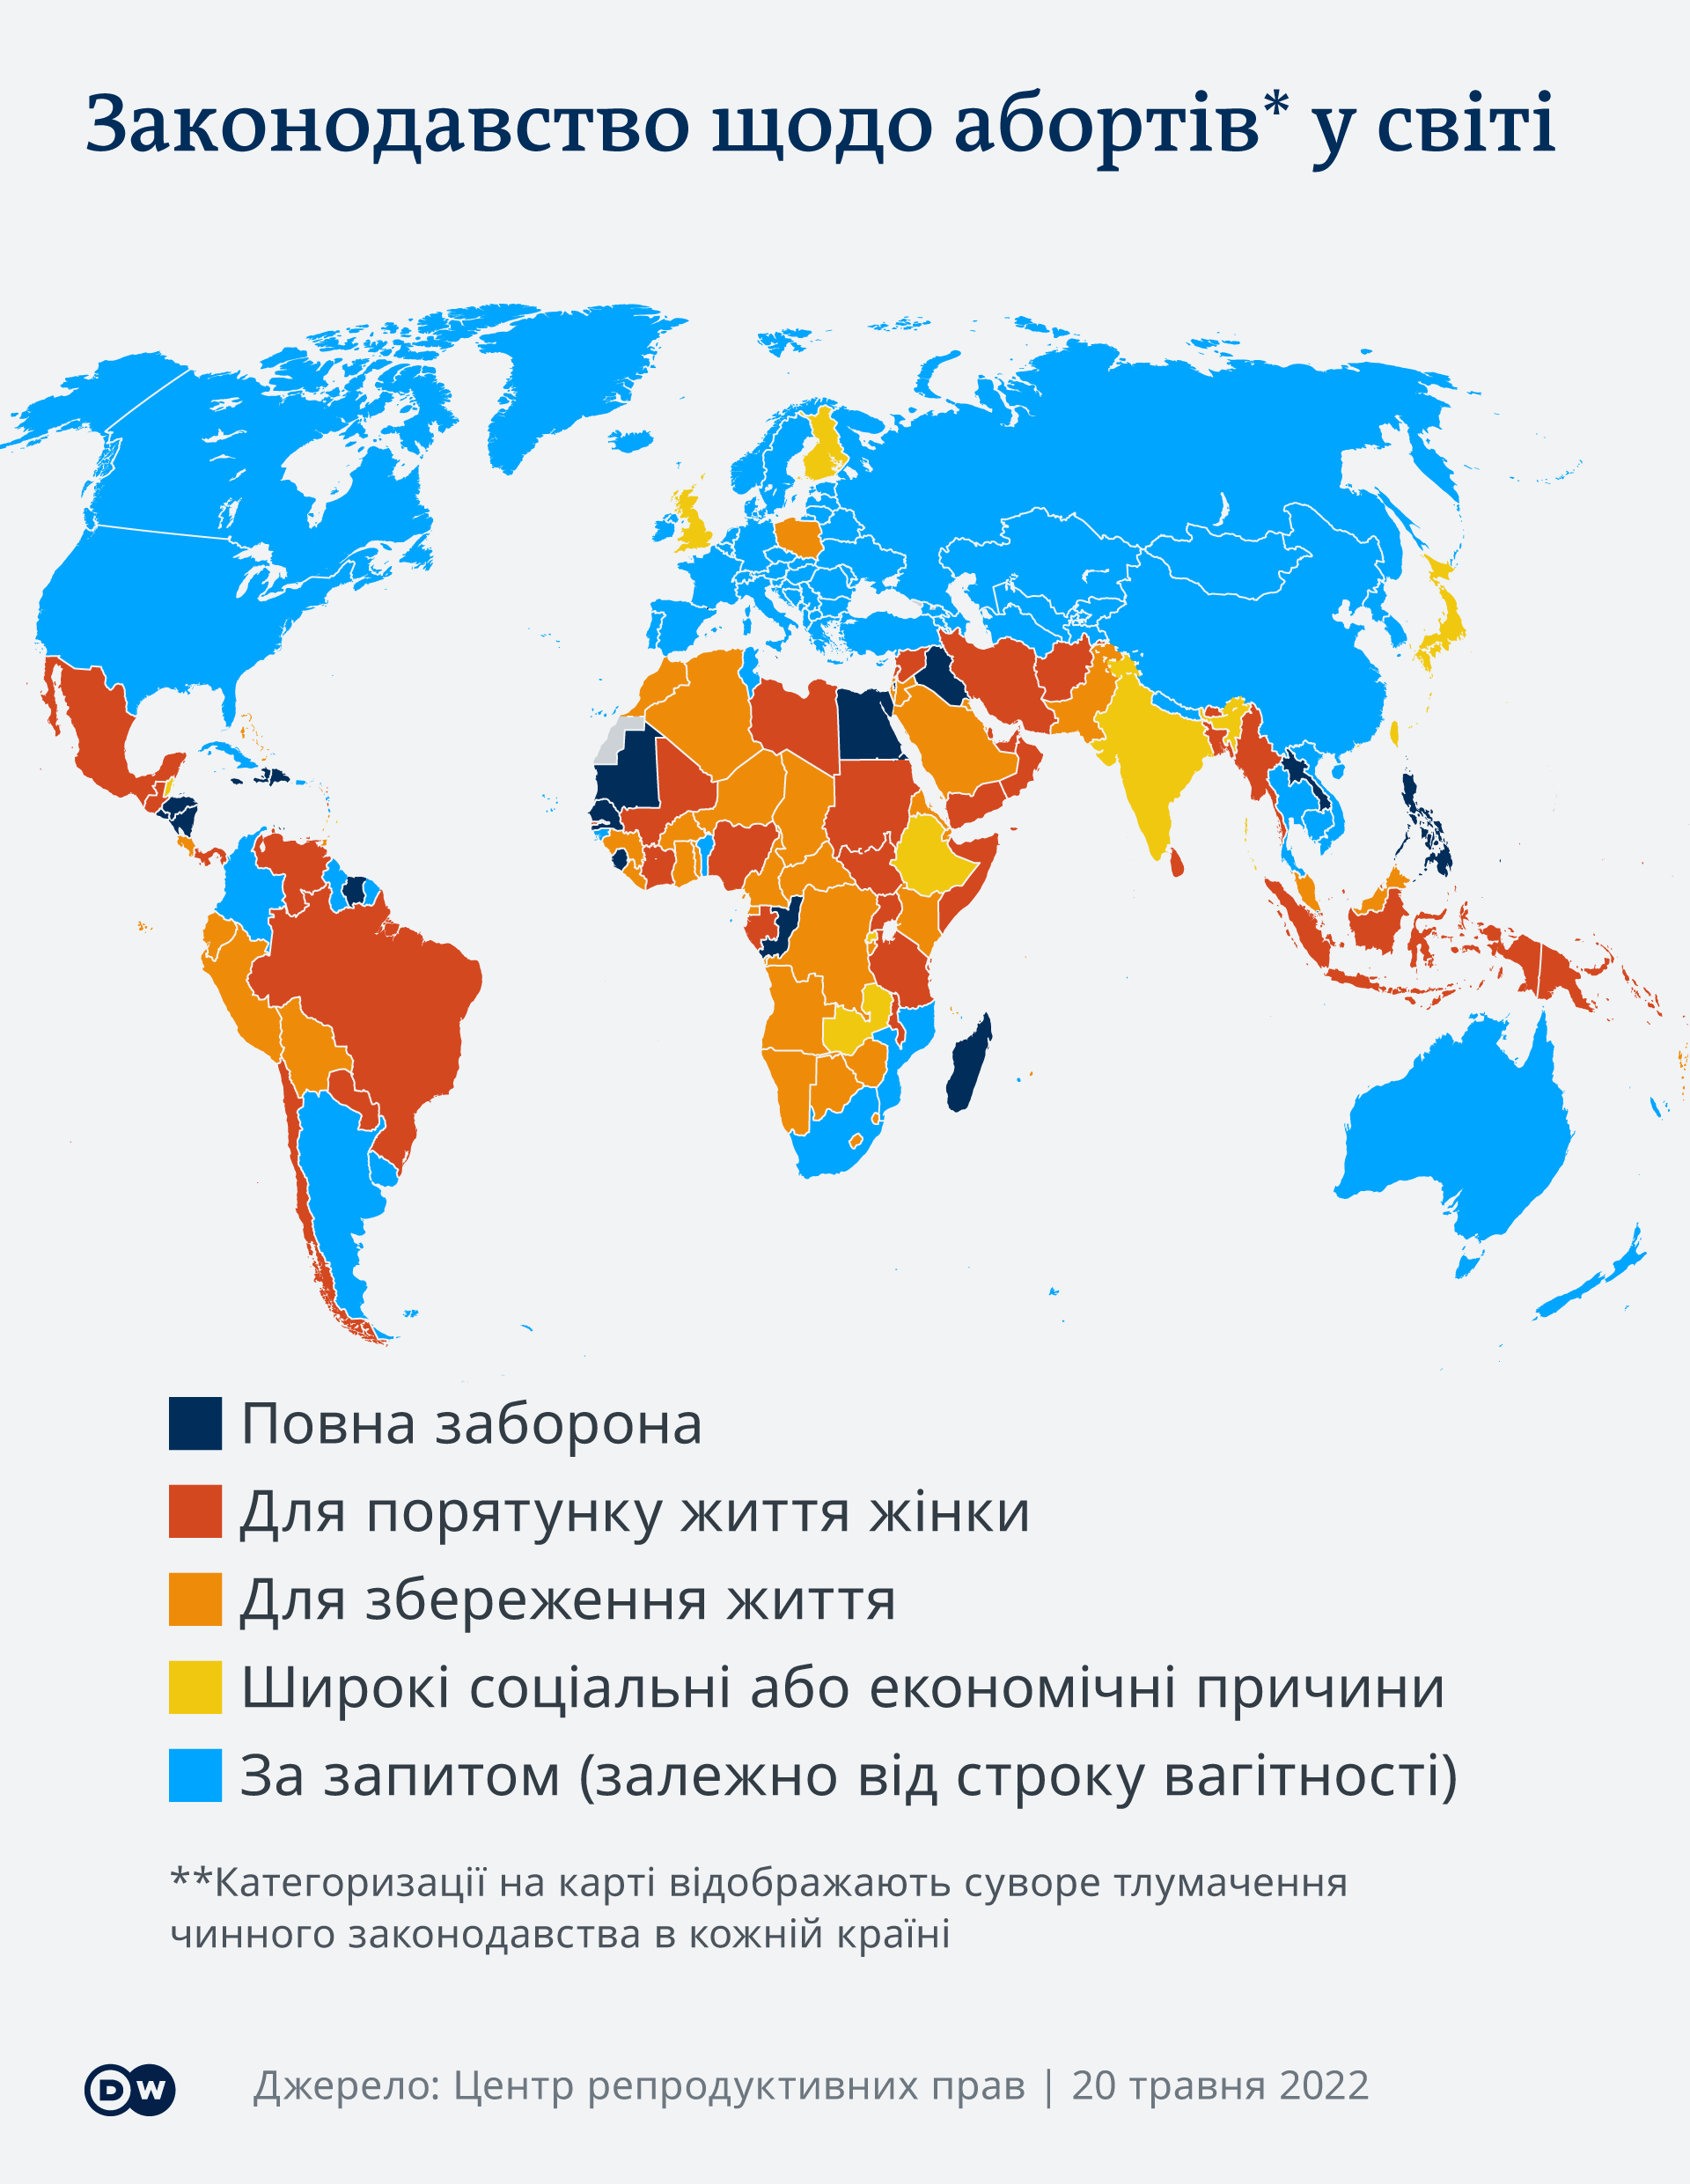 Законодавство щодо абортів у світі: карта